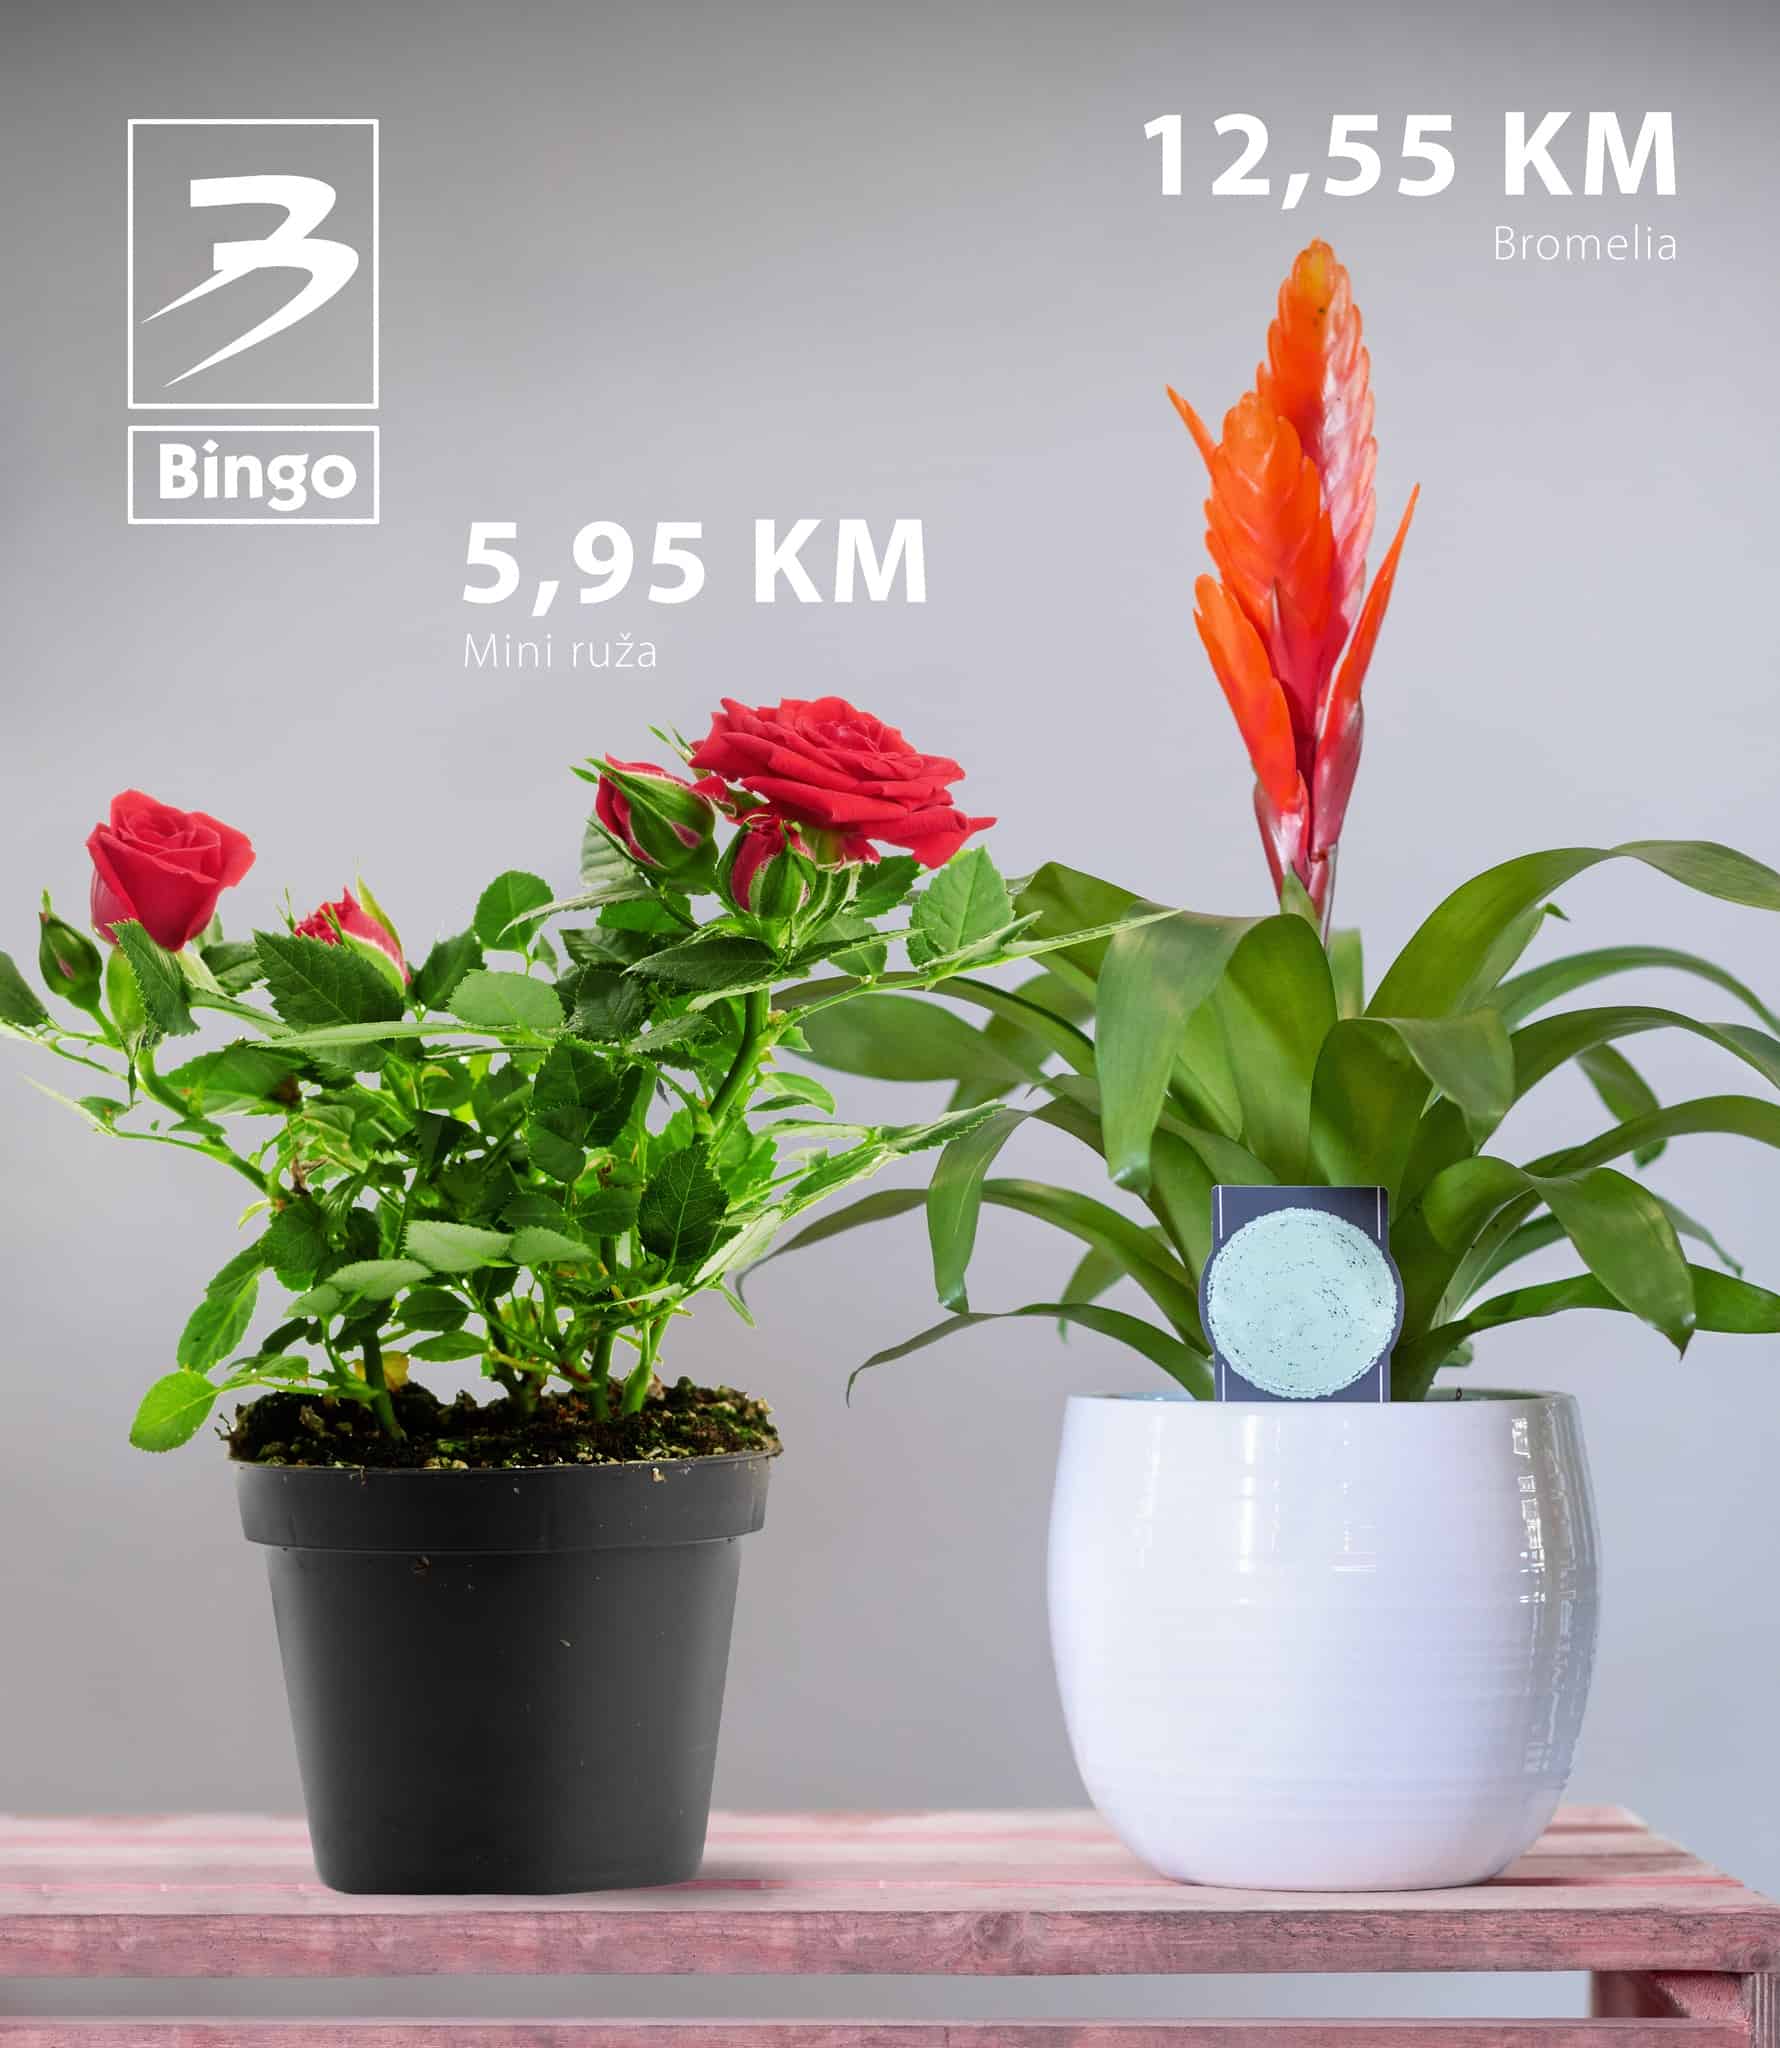 Bingo katalog juli 2022 donosi nam akcijske cijene cvjeca!